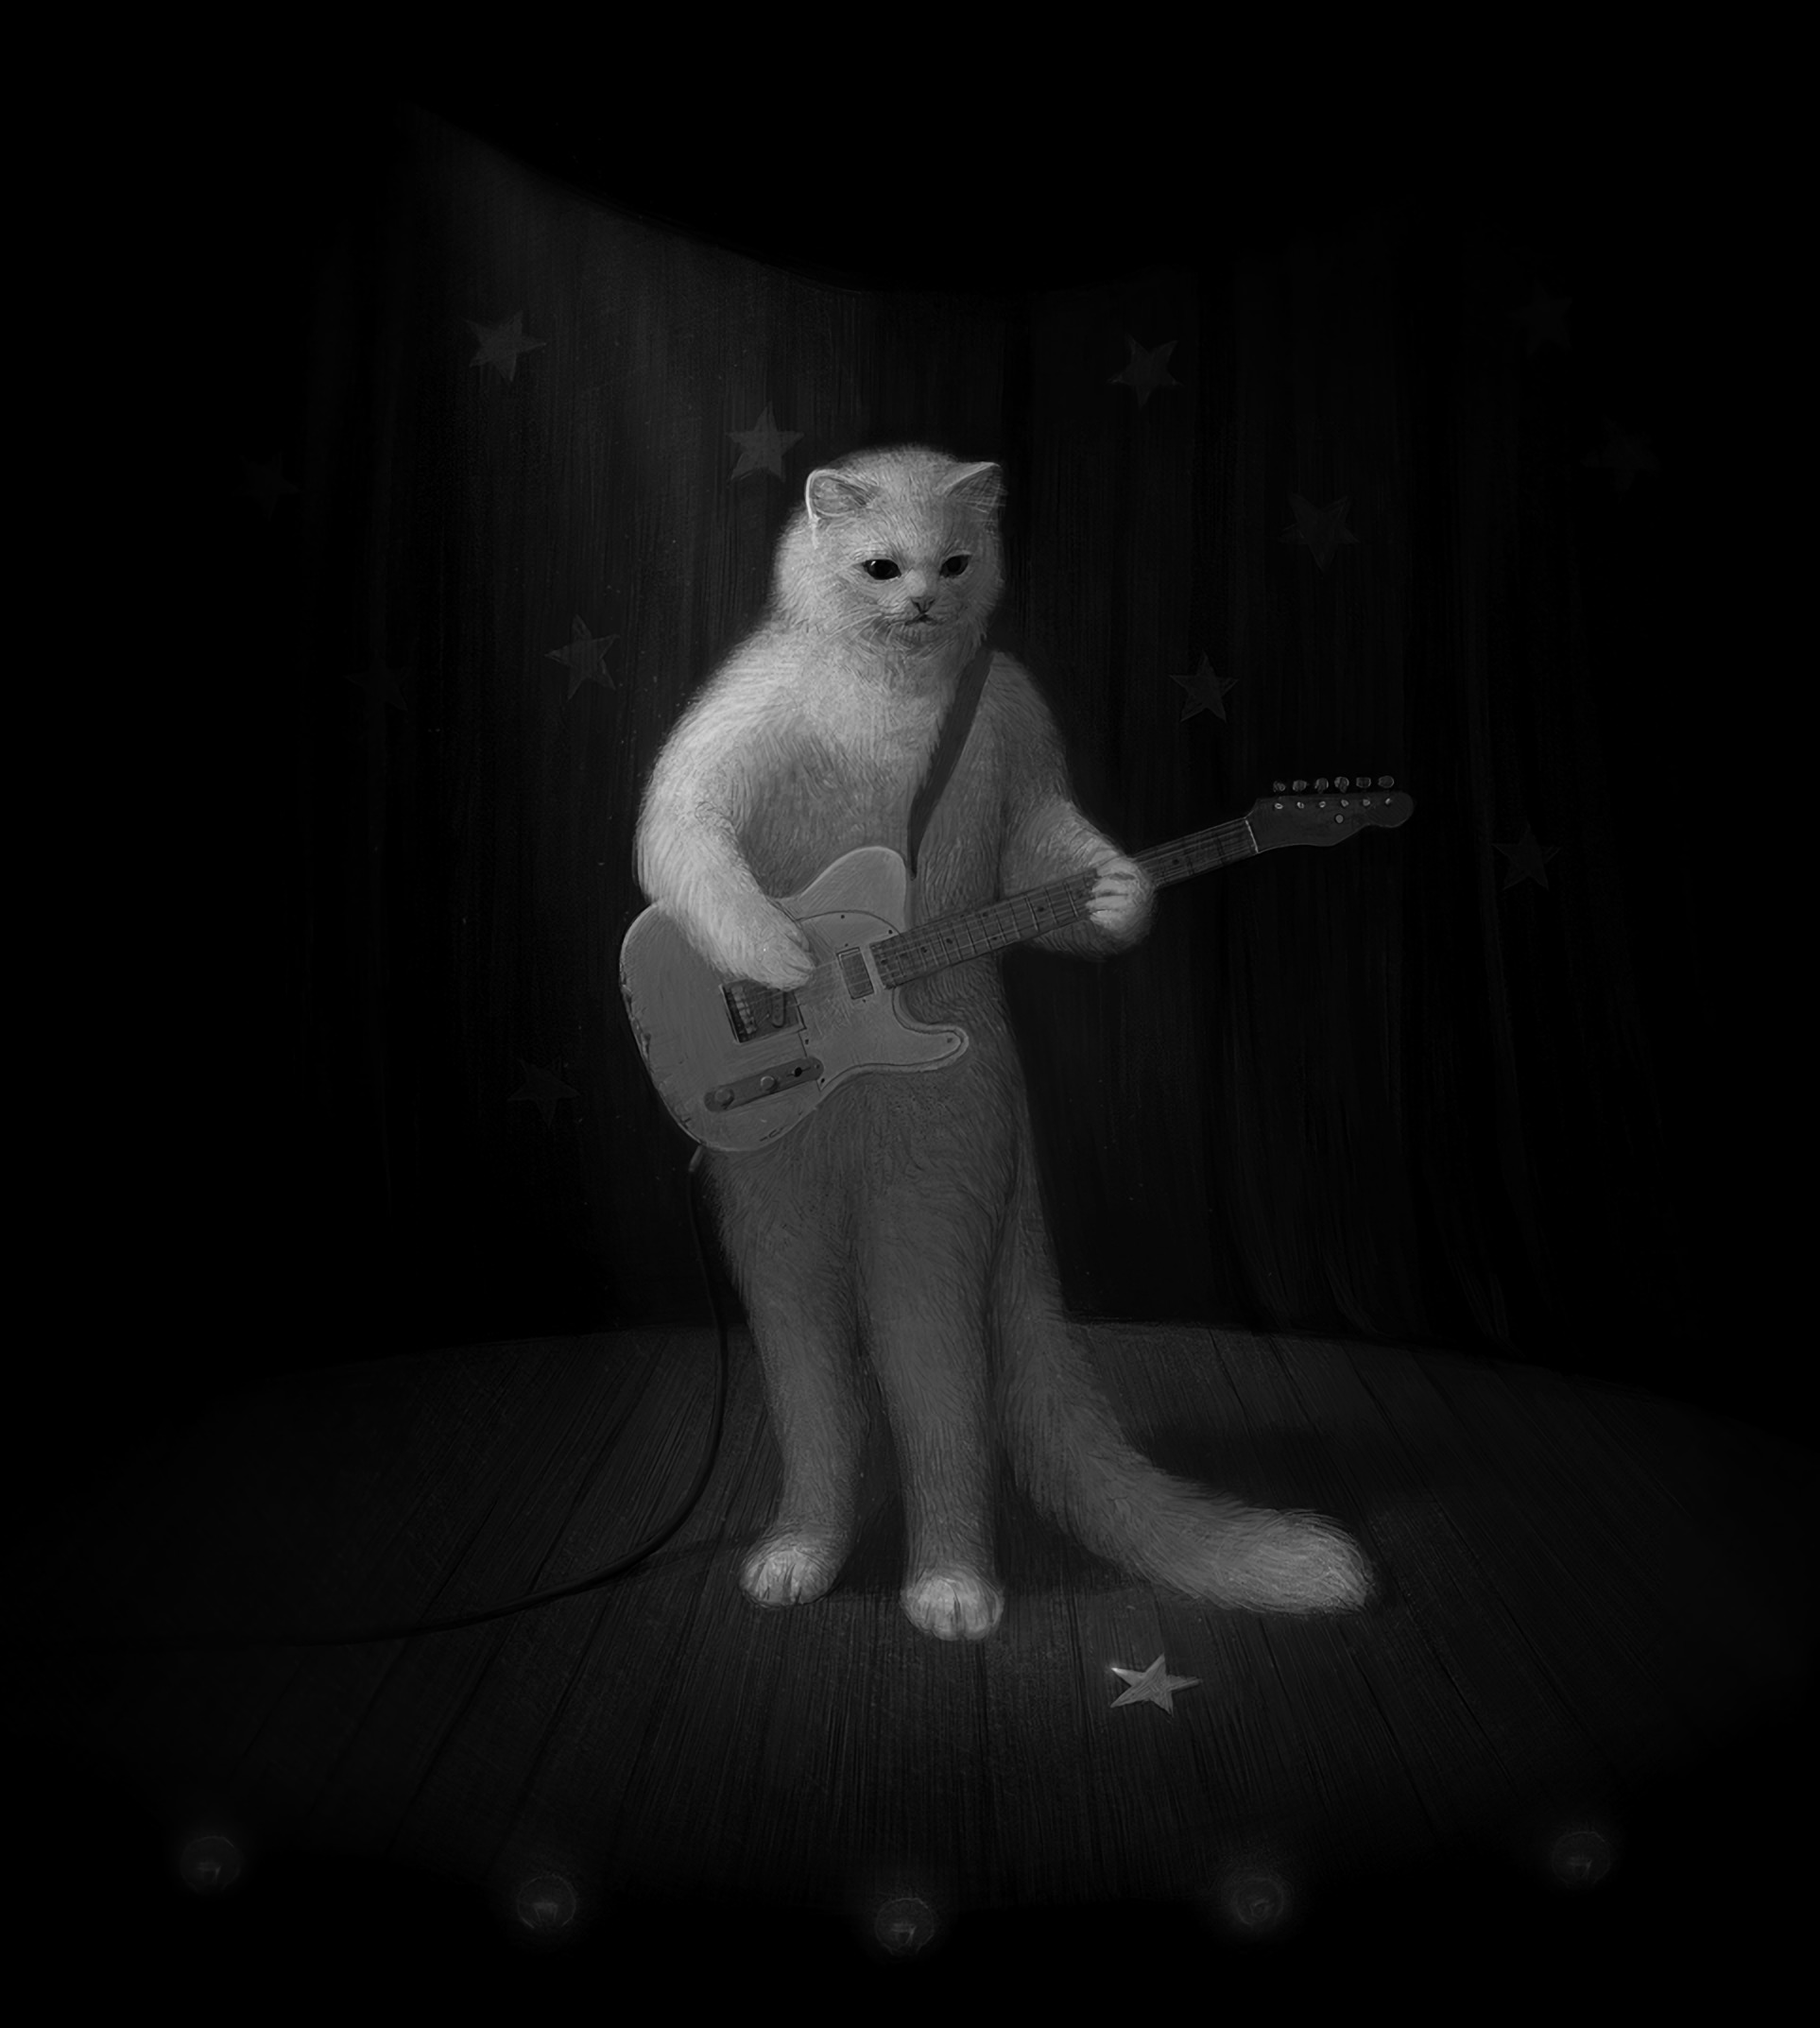 guitar, art, cat, bw, chb, musician